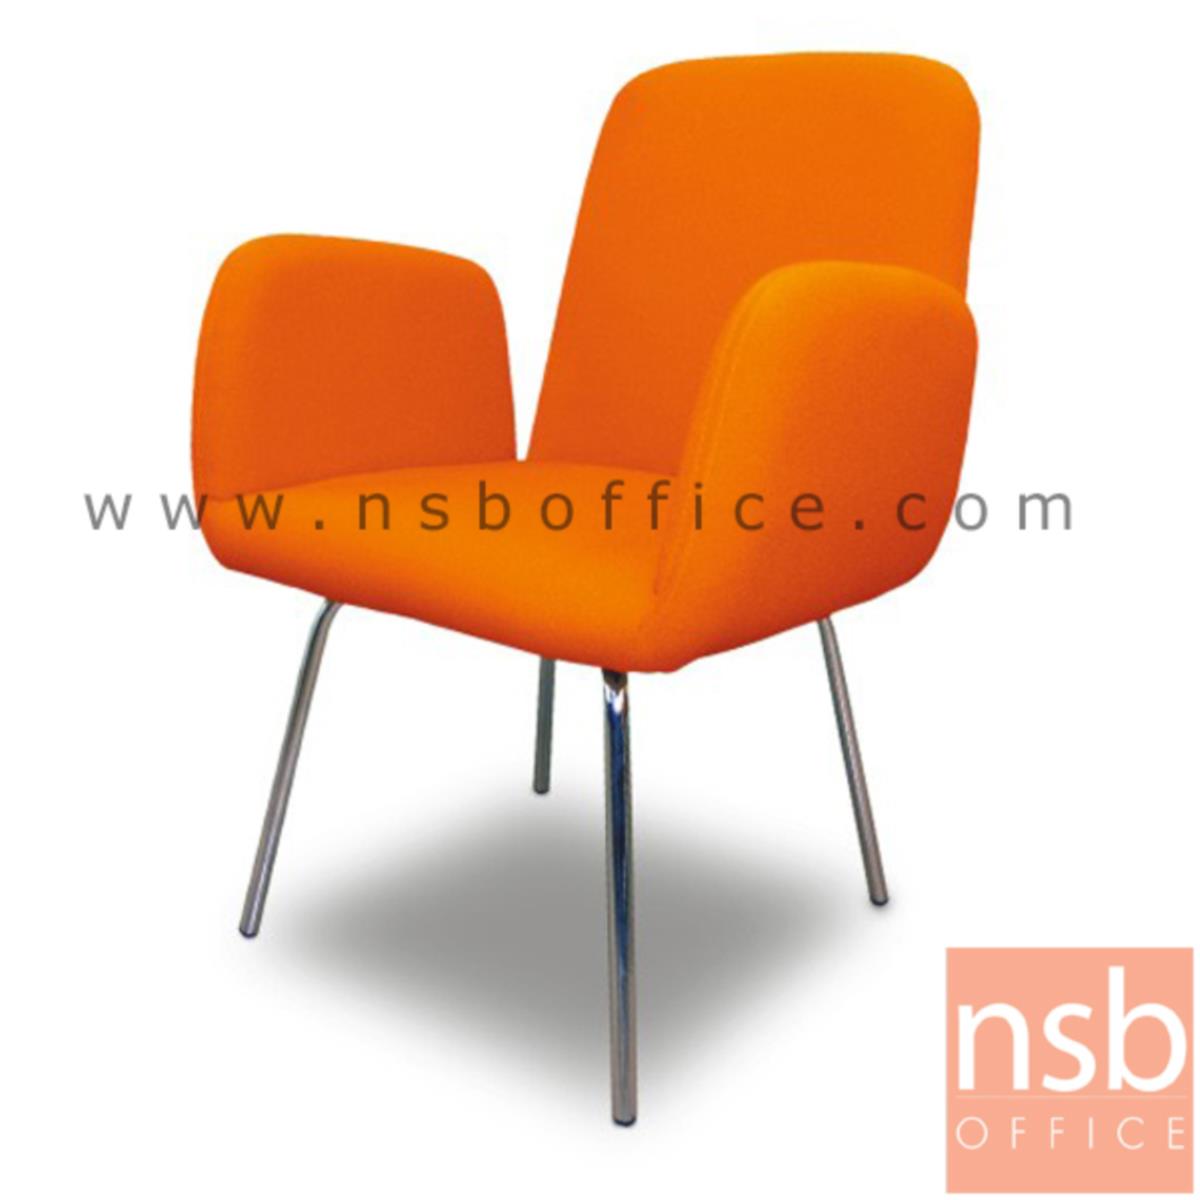 B22A014:เก้าอี้พักผ่อนหนังเทียม  รุ่น Knopfler (นอฟเลอร์) ขนาด 61W cm. ขาเหล็กชุบโครเมี่ยม